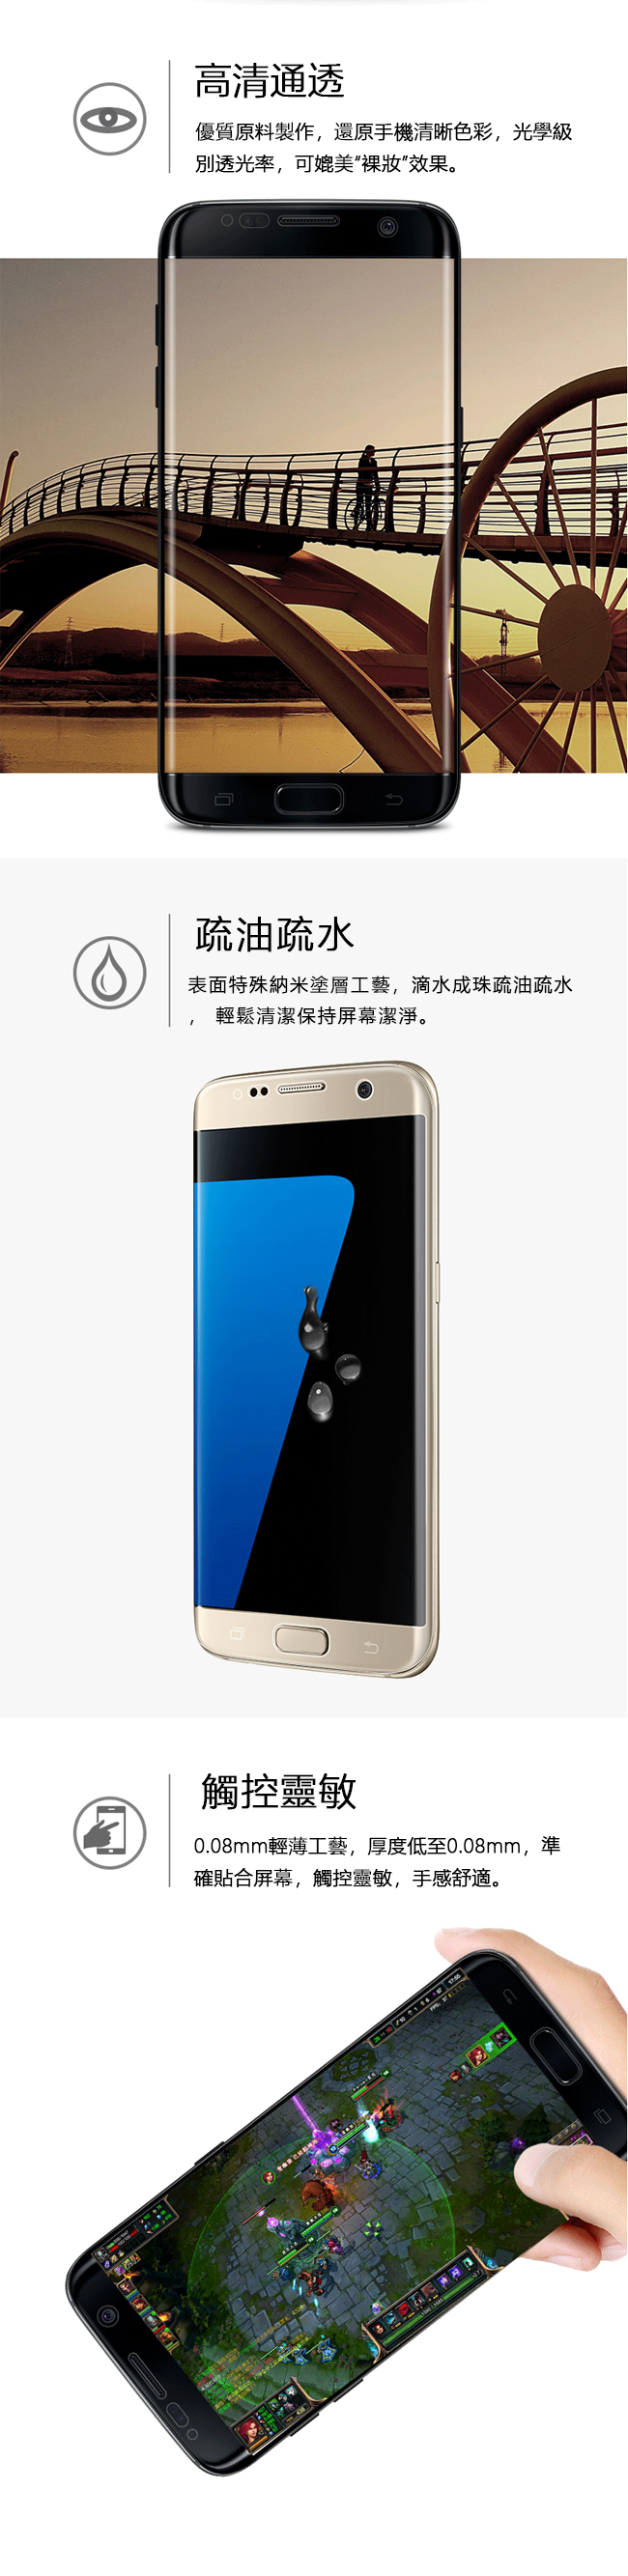 2張裝 三星 Galaxy S7 edge 5.5吋 全屏滿版水凝膜 螢幕保護貼